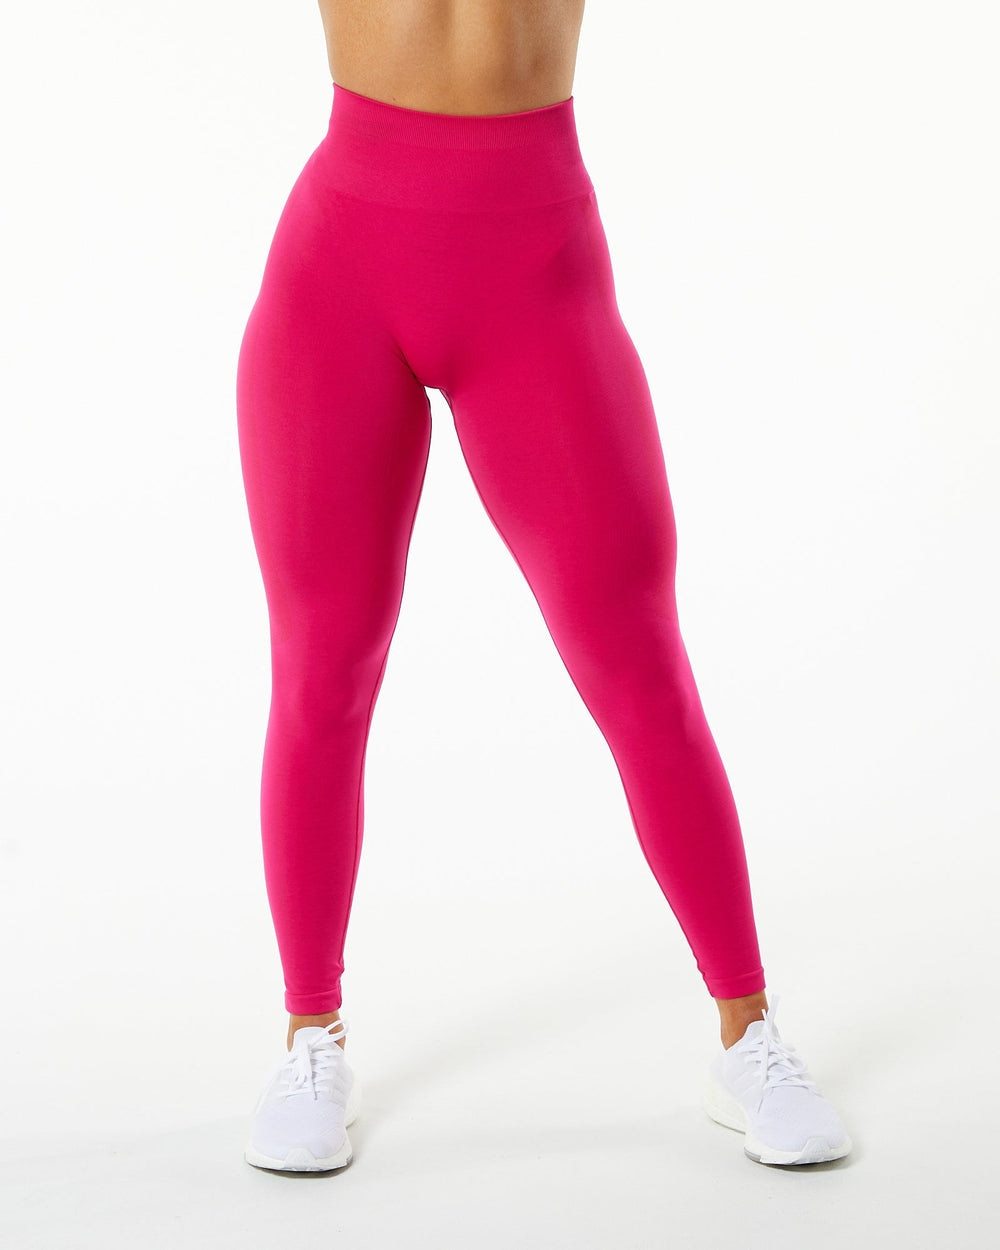 Ruffle Yoga Pants Activewear Truetights 